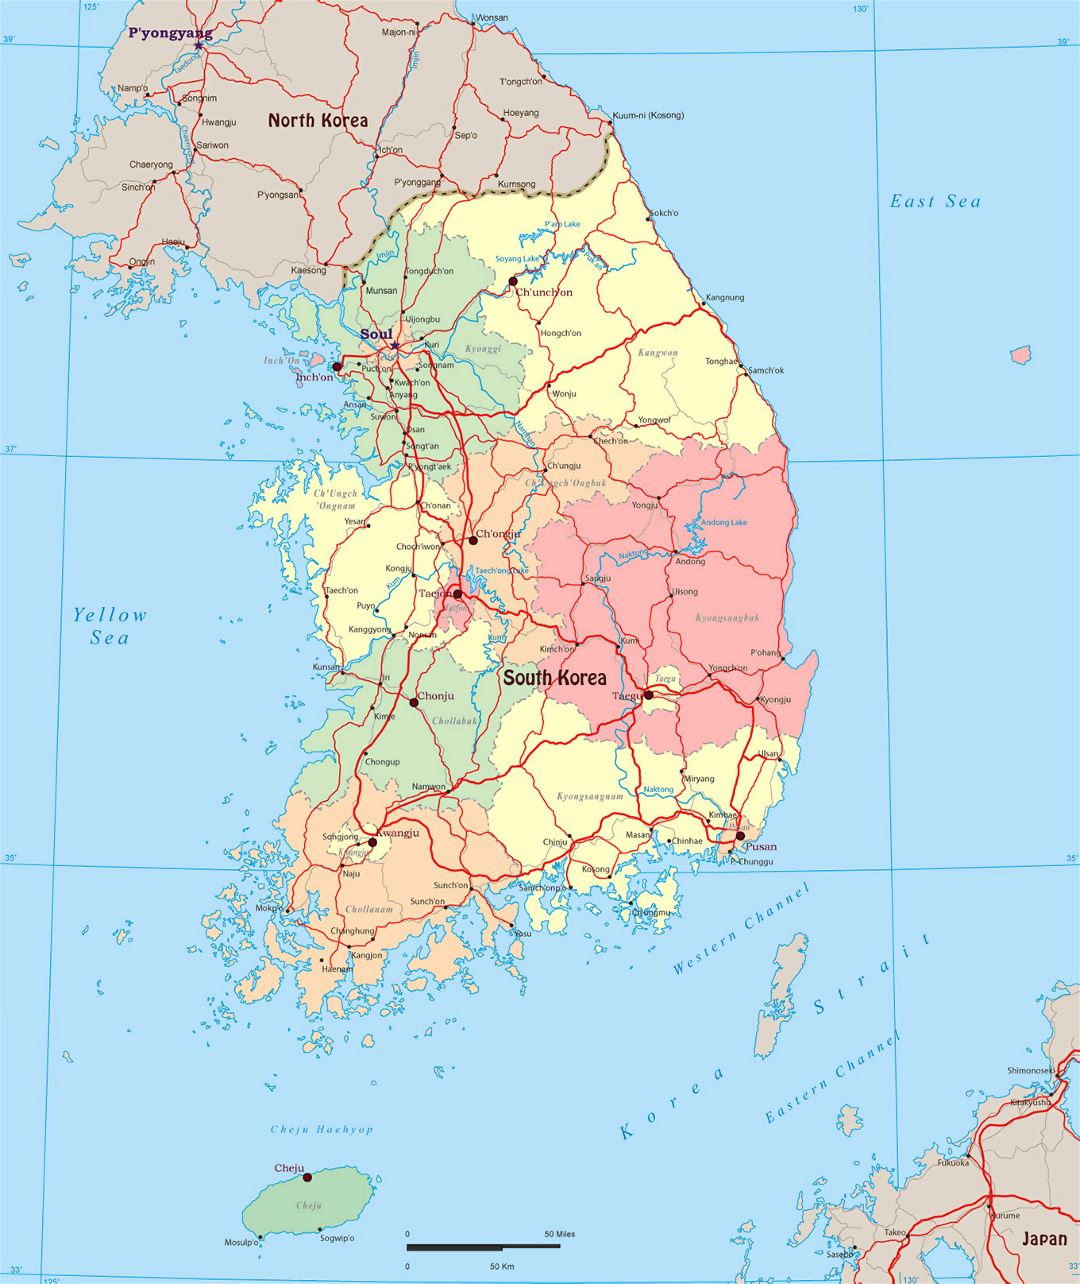 Grande mapa político y administrativo de Corea del Sur con carreteras y grandes ciudades